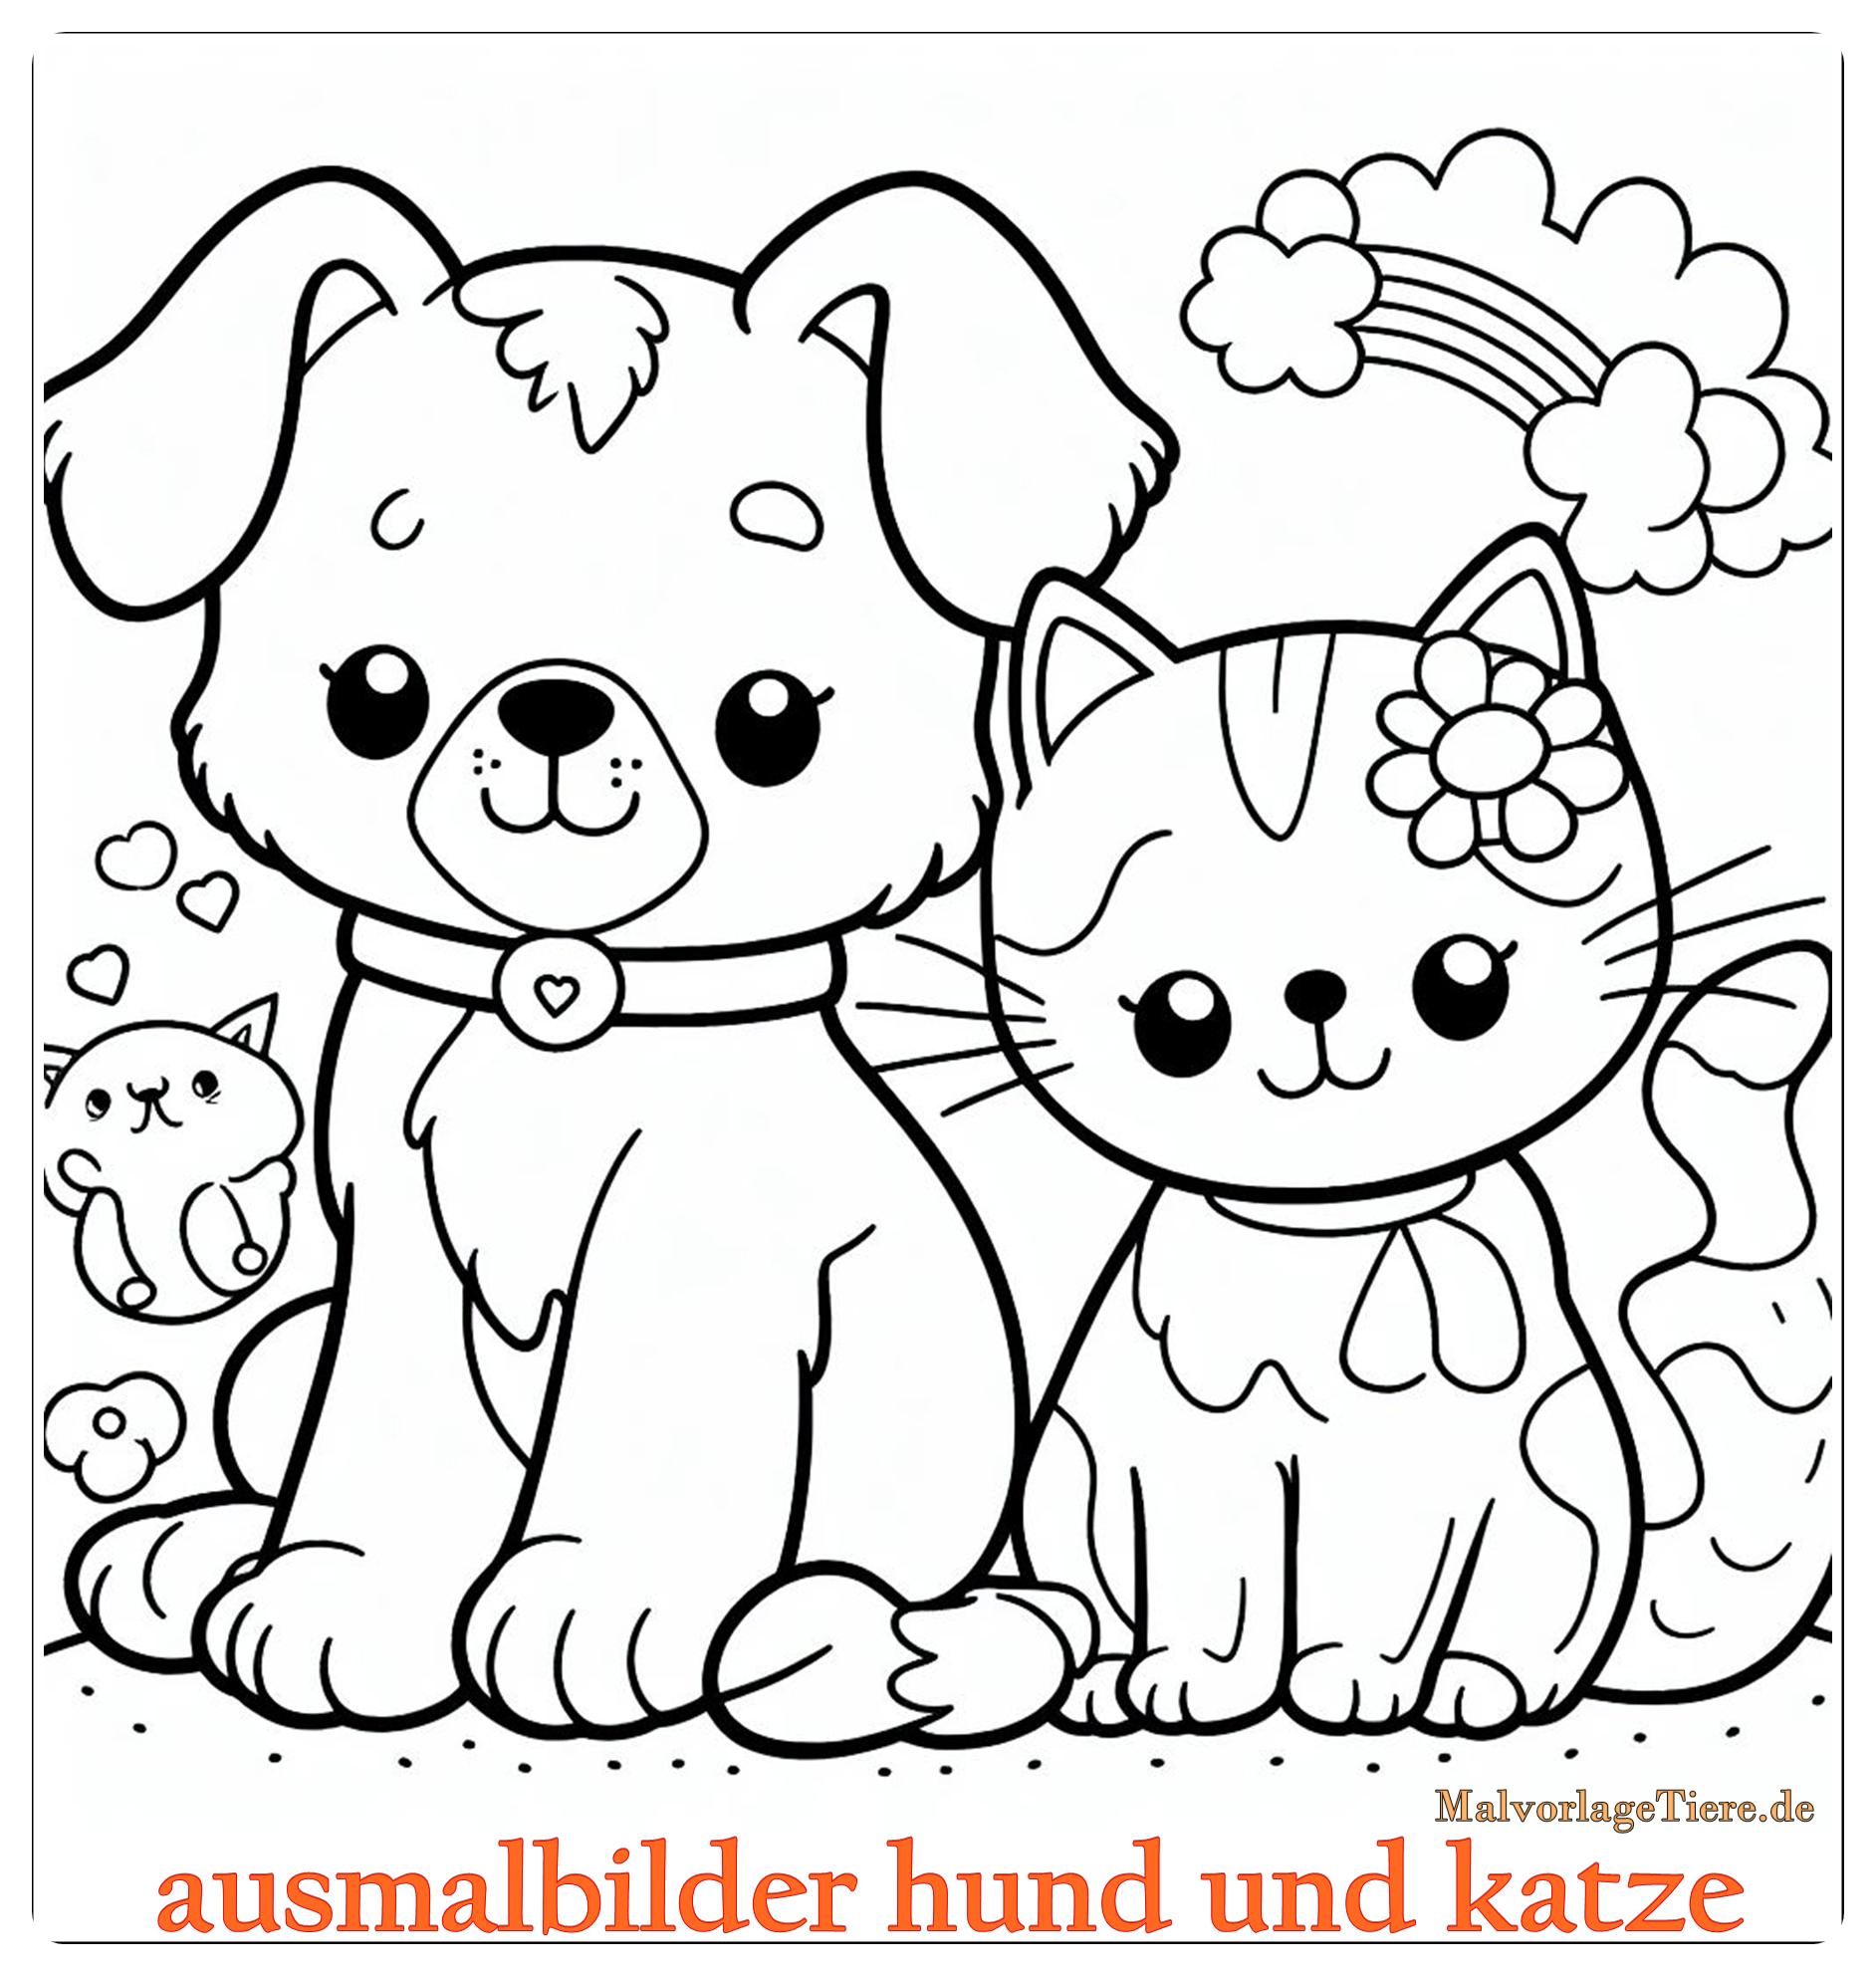 ausmalbilder hund und katze 06 by malvorlagetiere.de